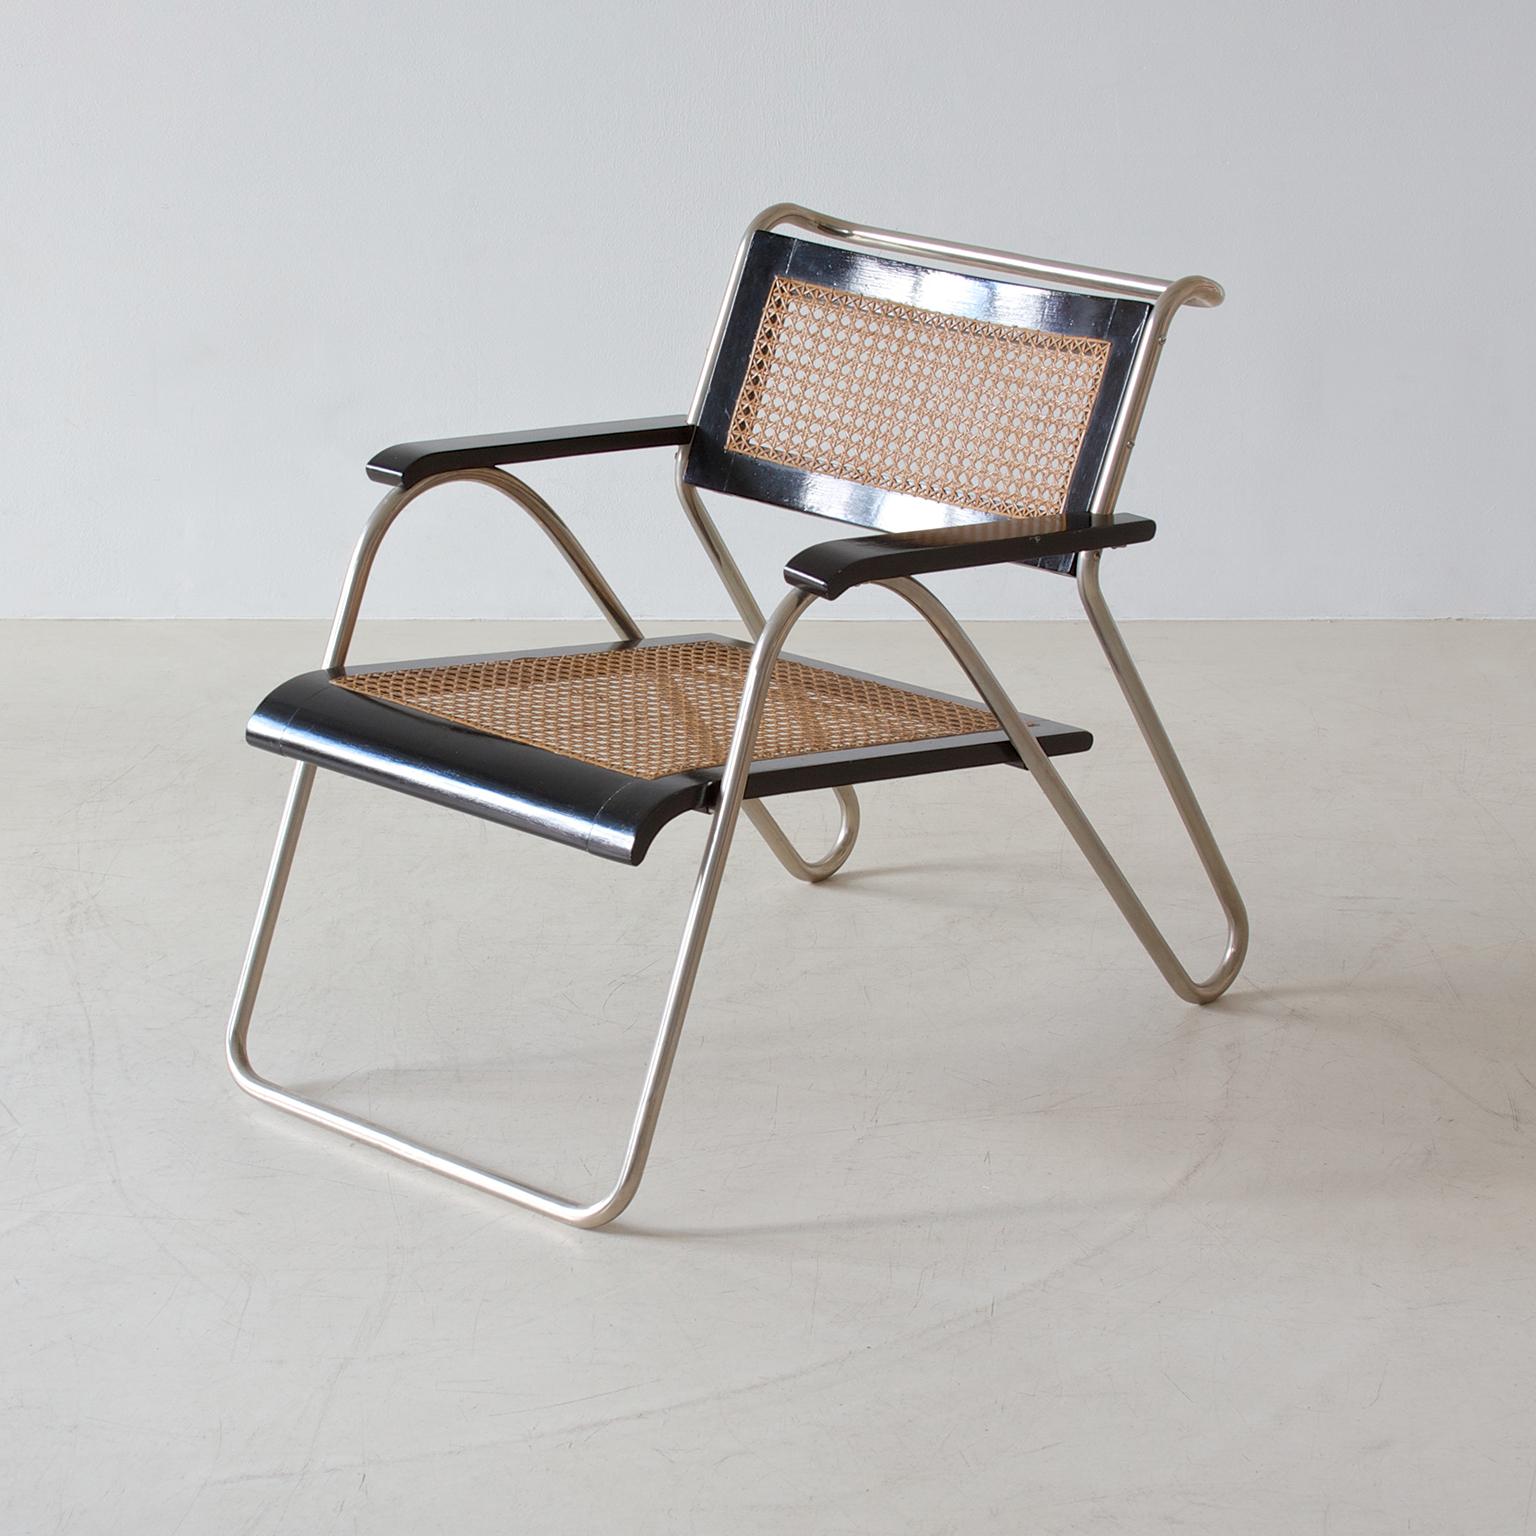 Bauhaus-Sessel aus Stahlrohr von Erich Dieckmann, schwarz lackiertes Holz, 1931 (Deutsch)